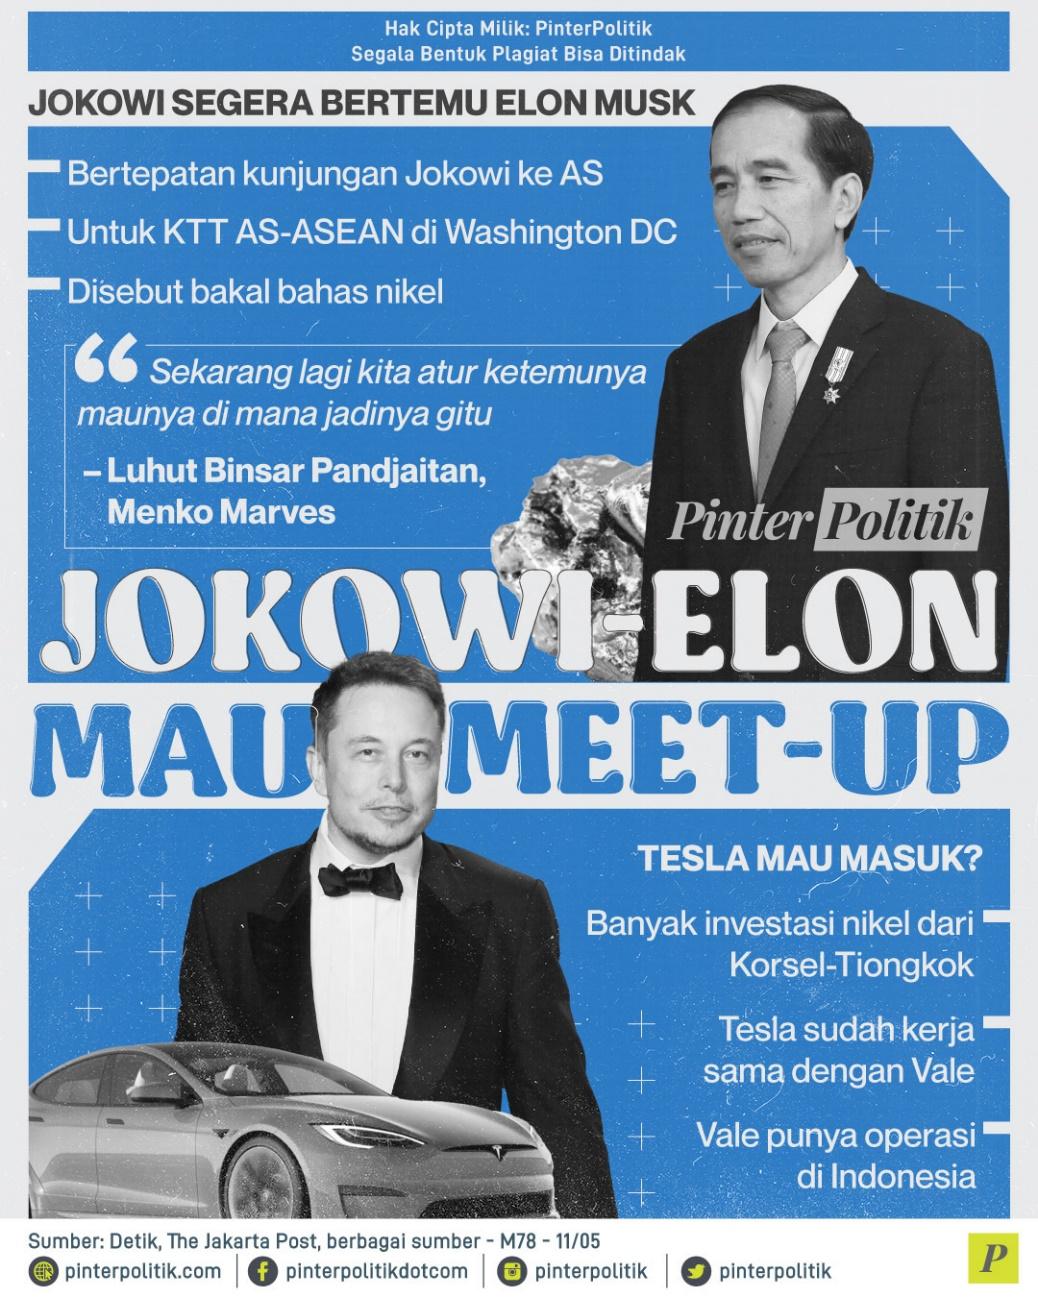 Jokowi Elon Musk Bertemu Meet-Up